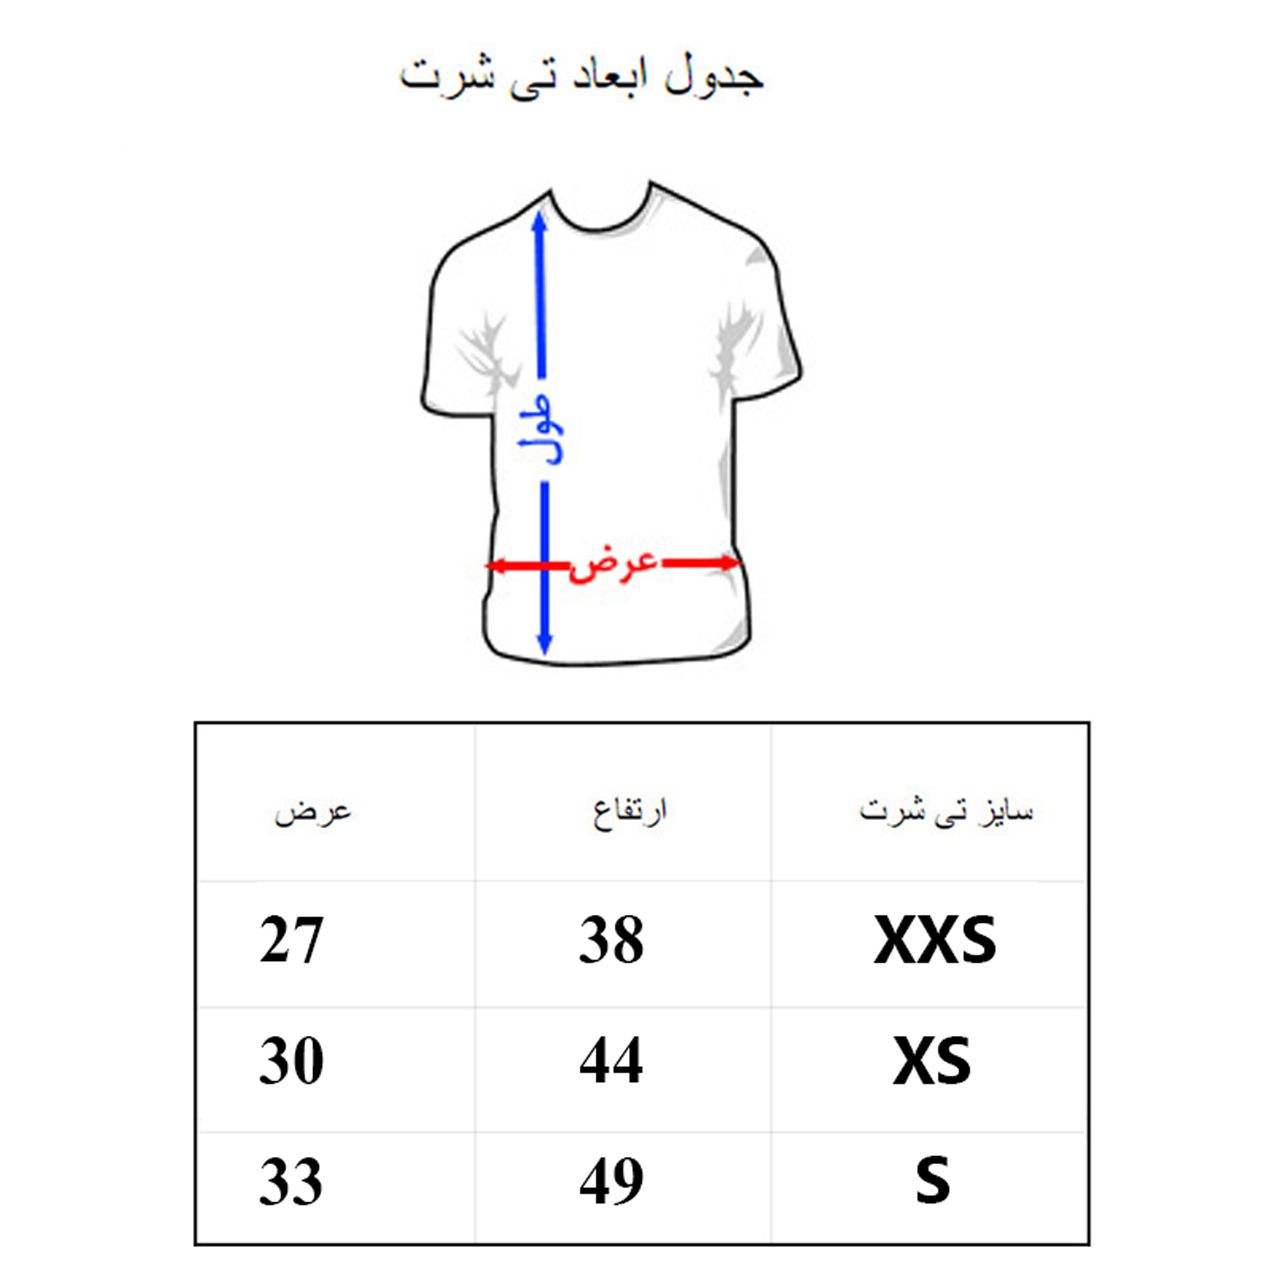 تی شرت آستین کوتاه پسرانه به رسم مدل لوراکس کد 1111 -  - 2